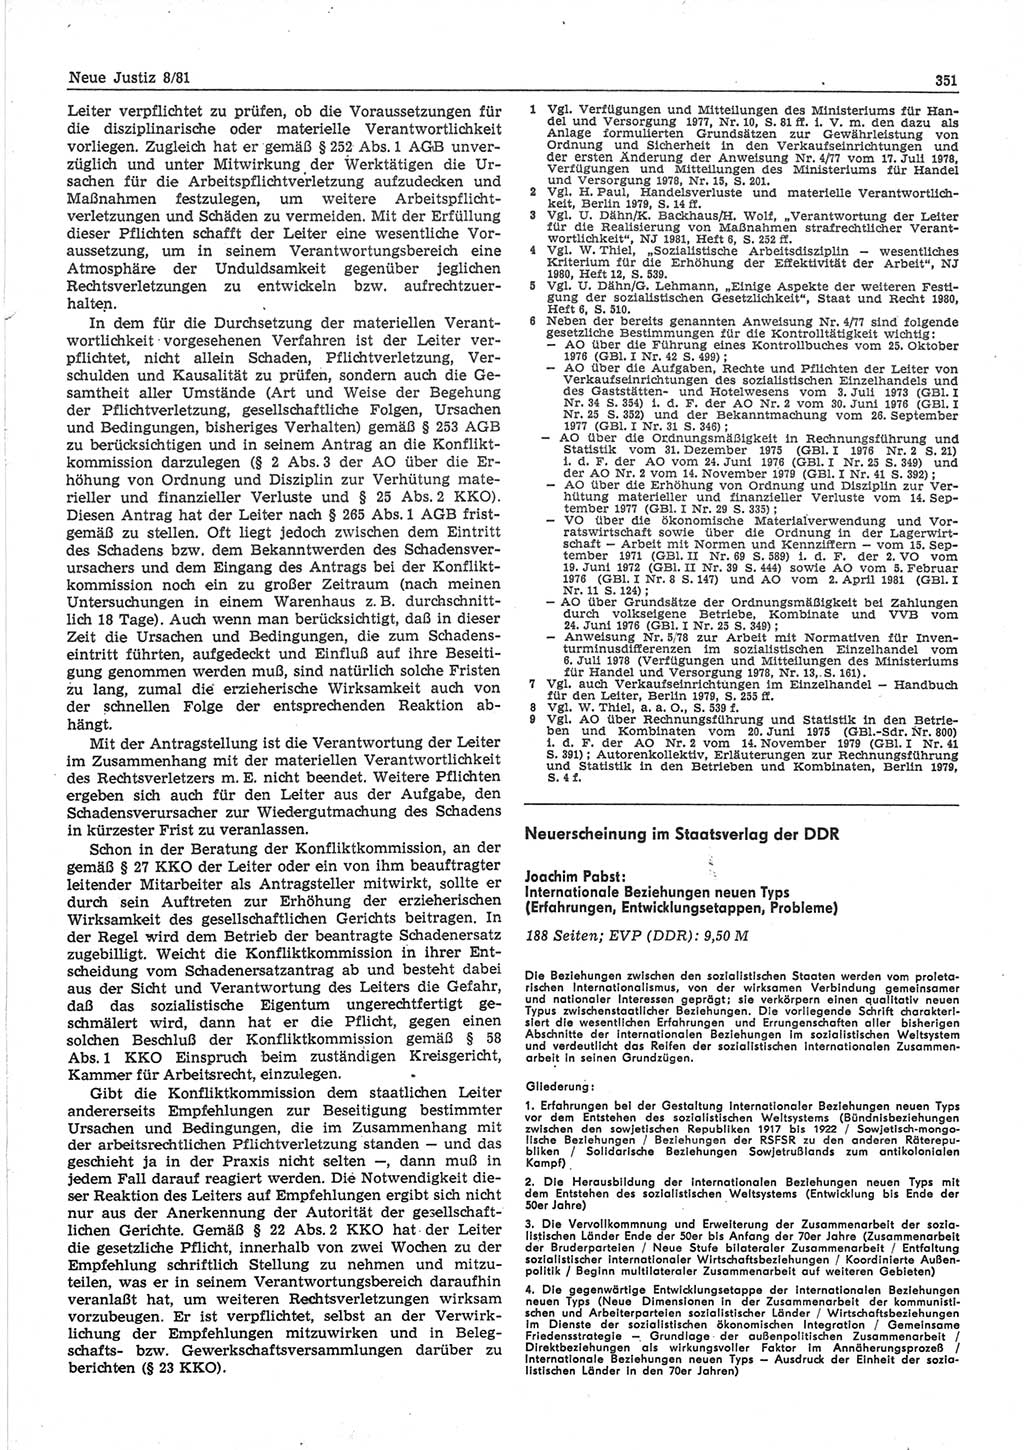 Neue Justiz (NJ), Zeitschrift für sozialistisches Recht und Gesetzlichkeit [Deutsche Demokratische Republik (DDR)], 35. Jahrgang 1981, Seite 351 (NJ DDR 1981, S. 351)